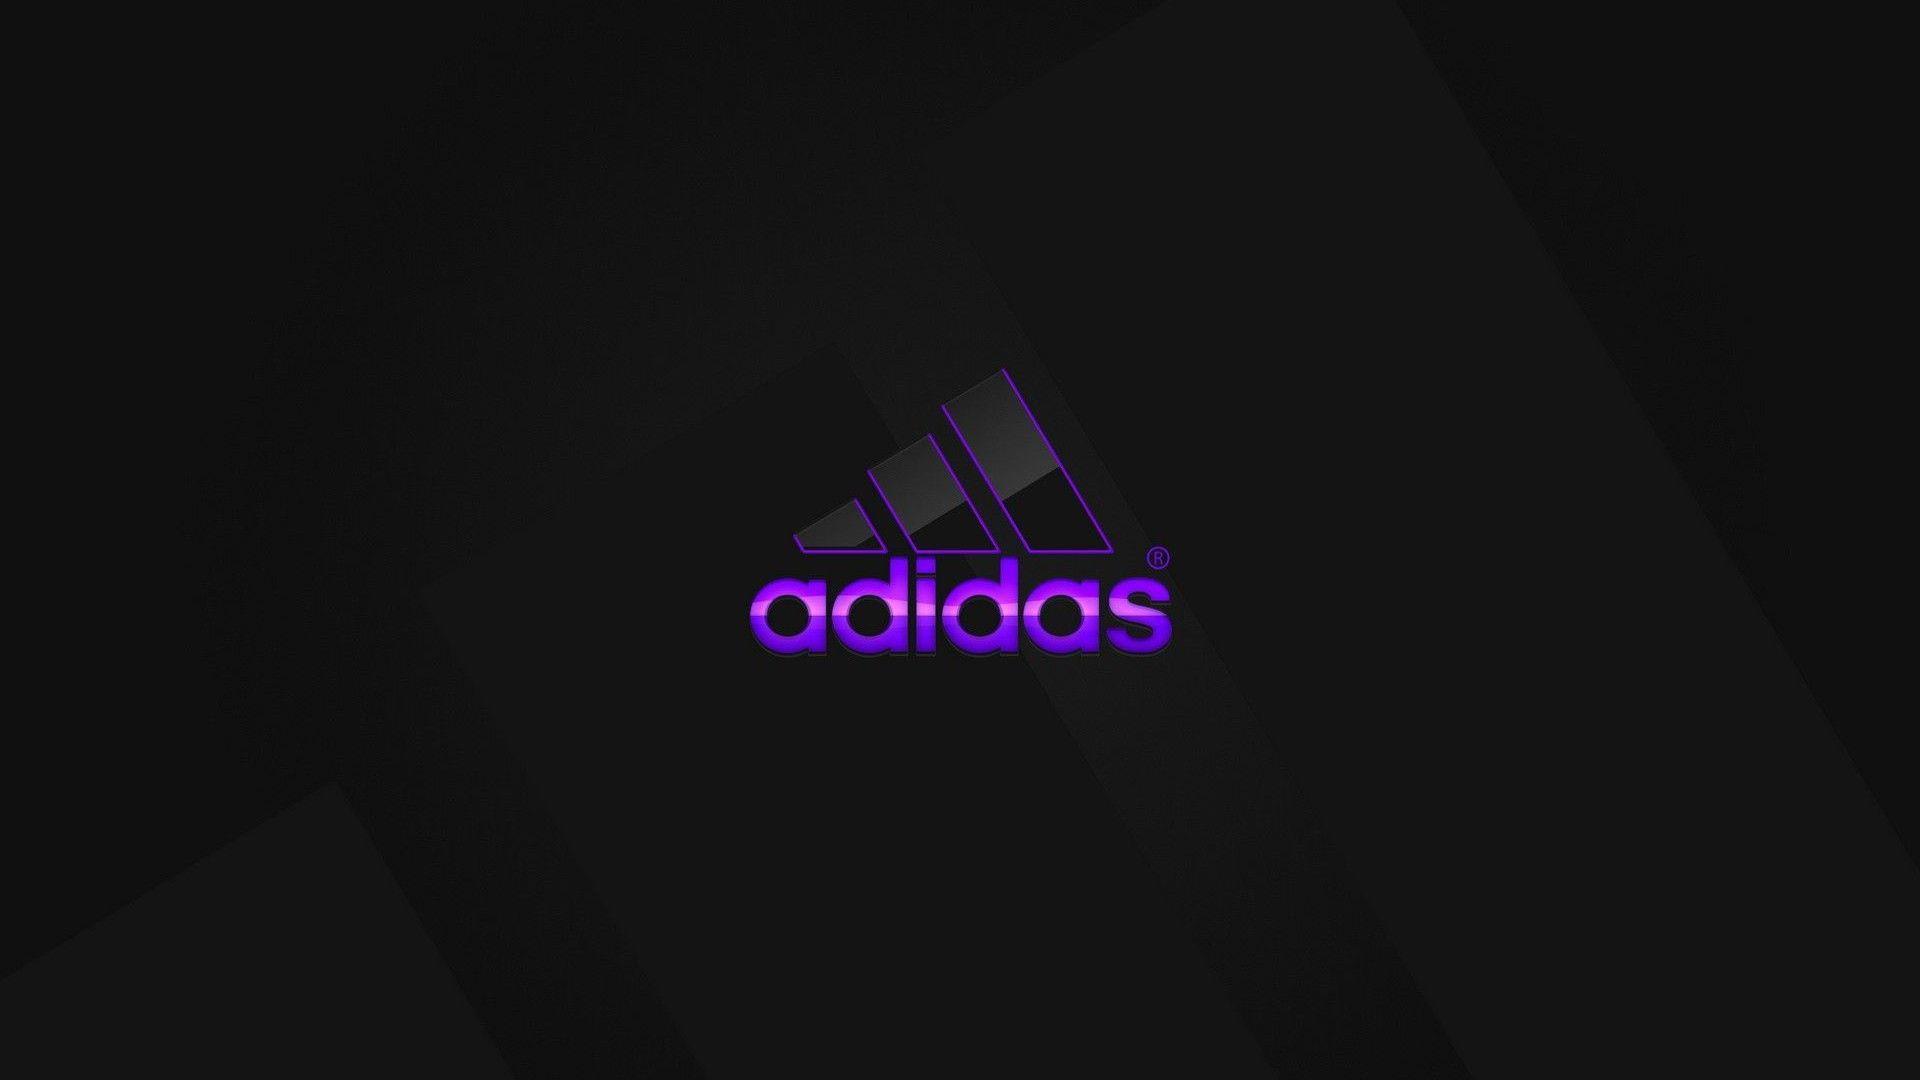 98 Adidas Logo Wallpaper 2017 On Wallpapersafari